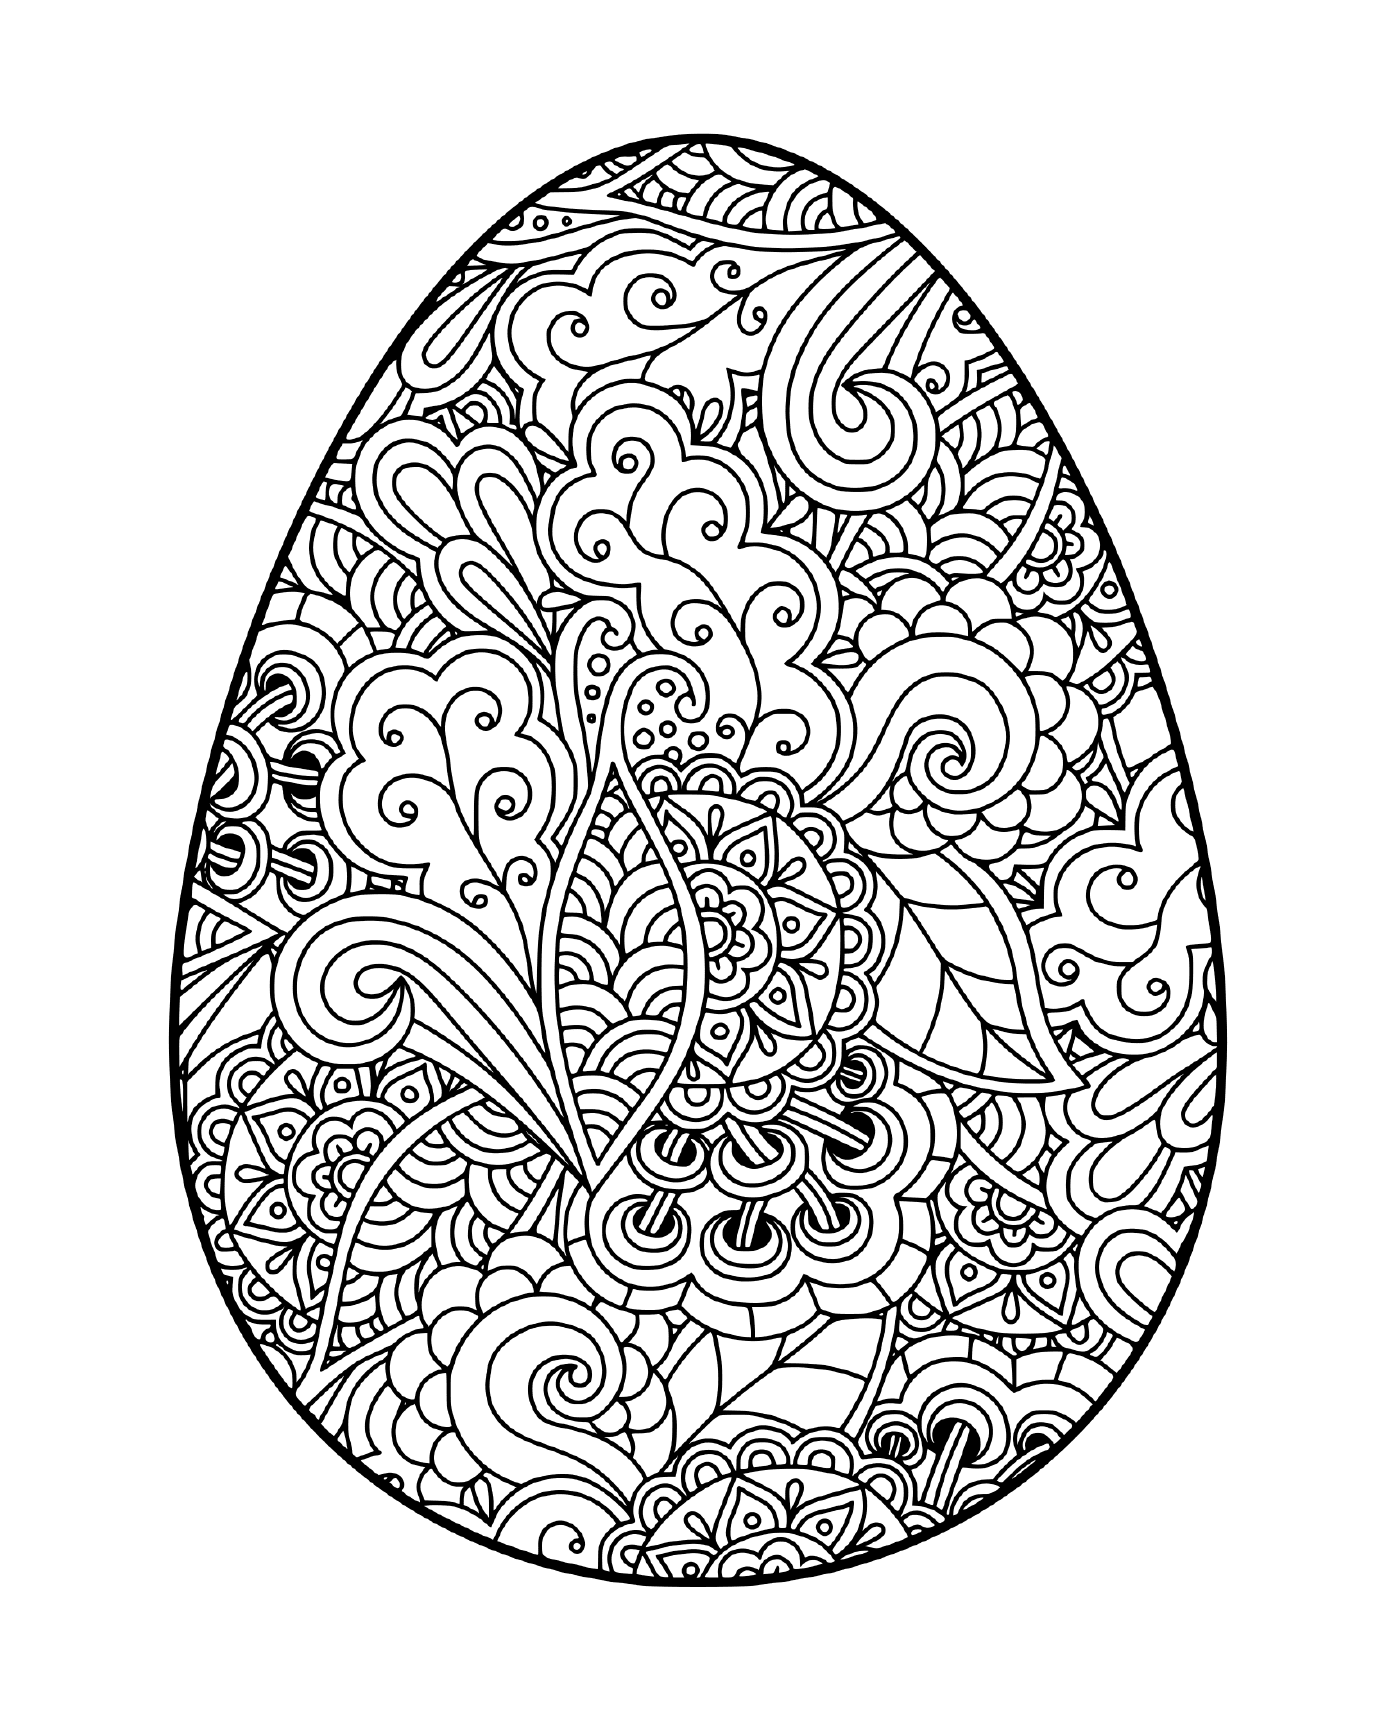   Easter egg avec motifs floraux 